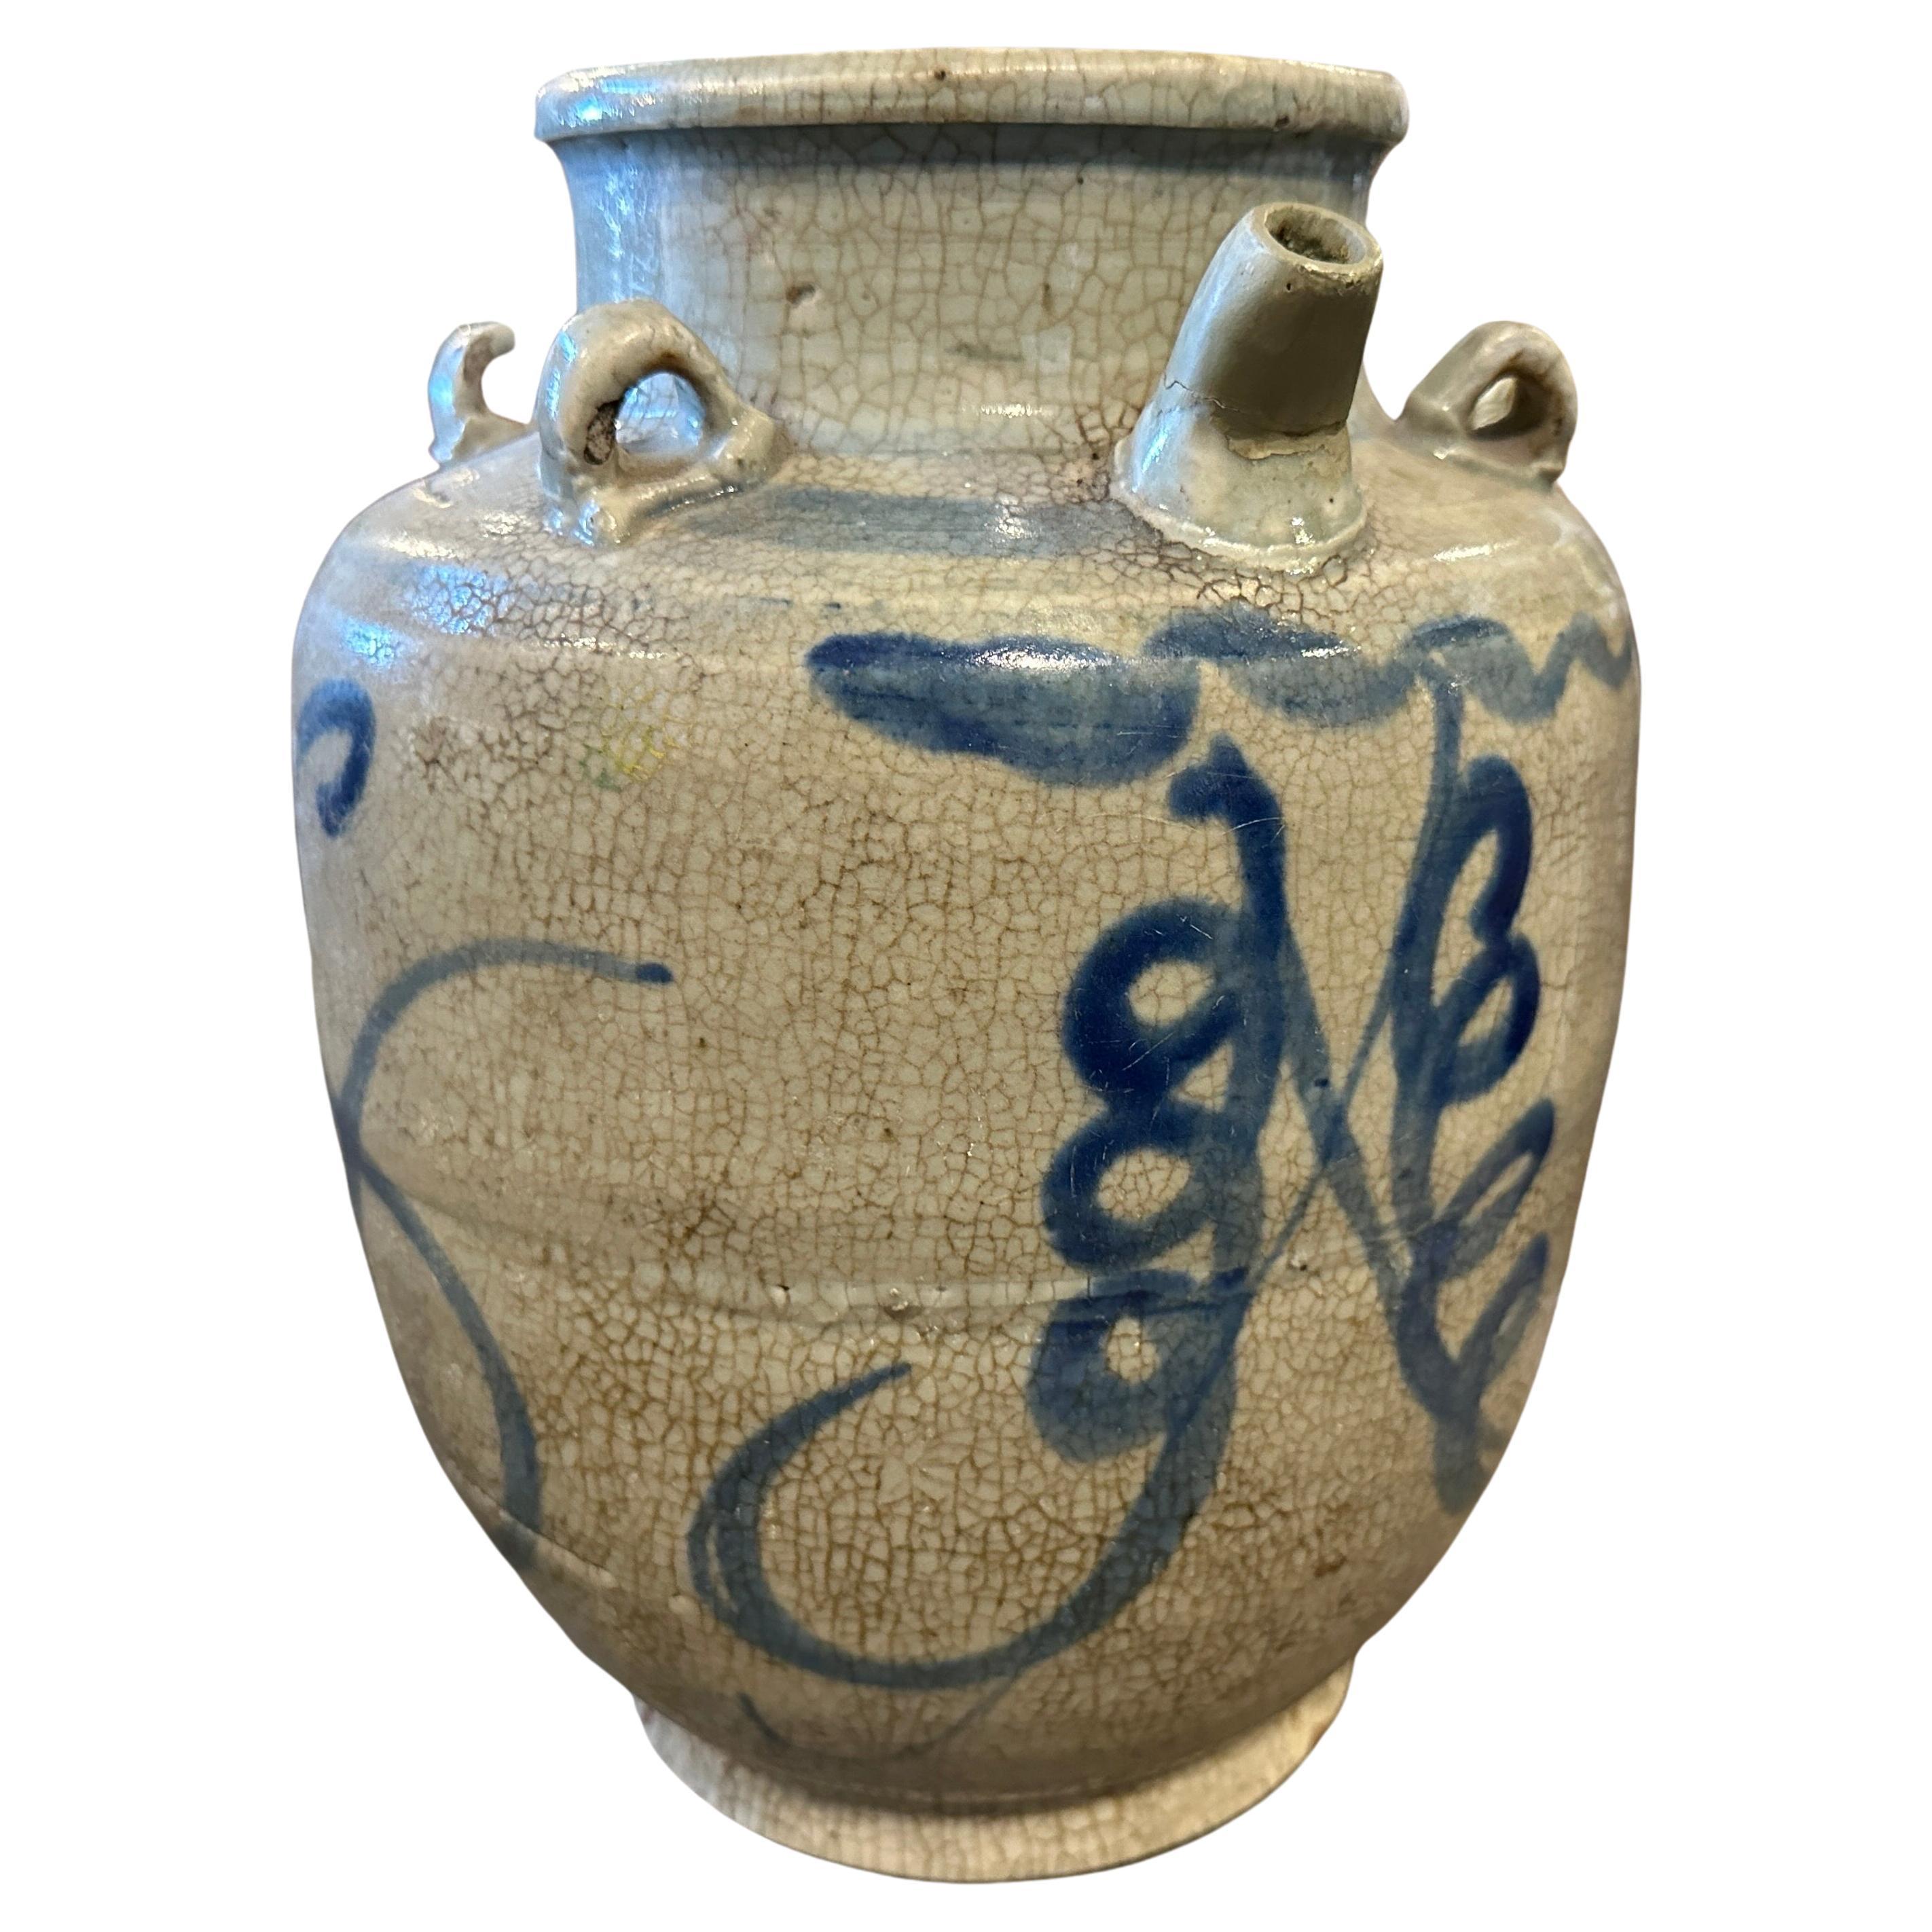 Chinesische Krug-Vase aus weißer und blauer Keramik des späten 19. Jahrhunderts